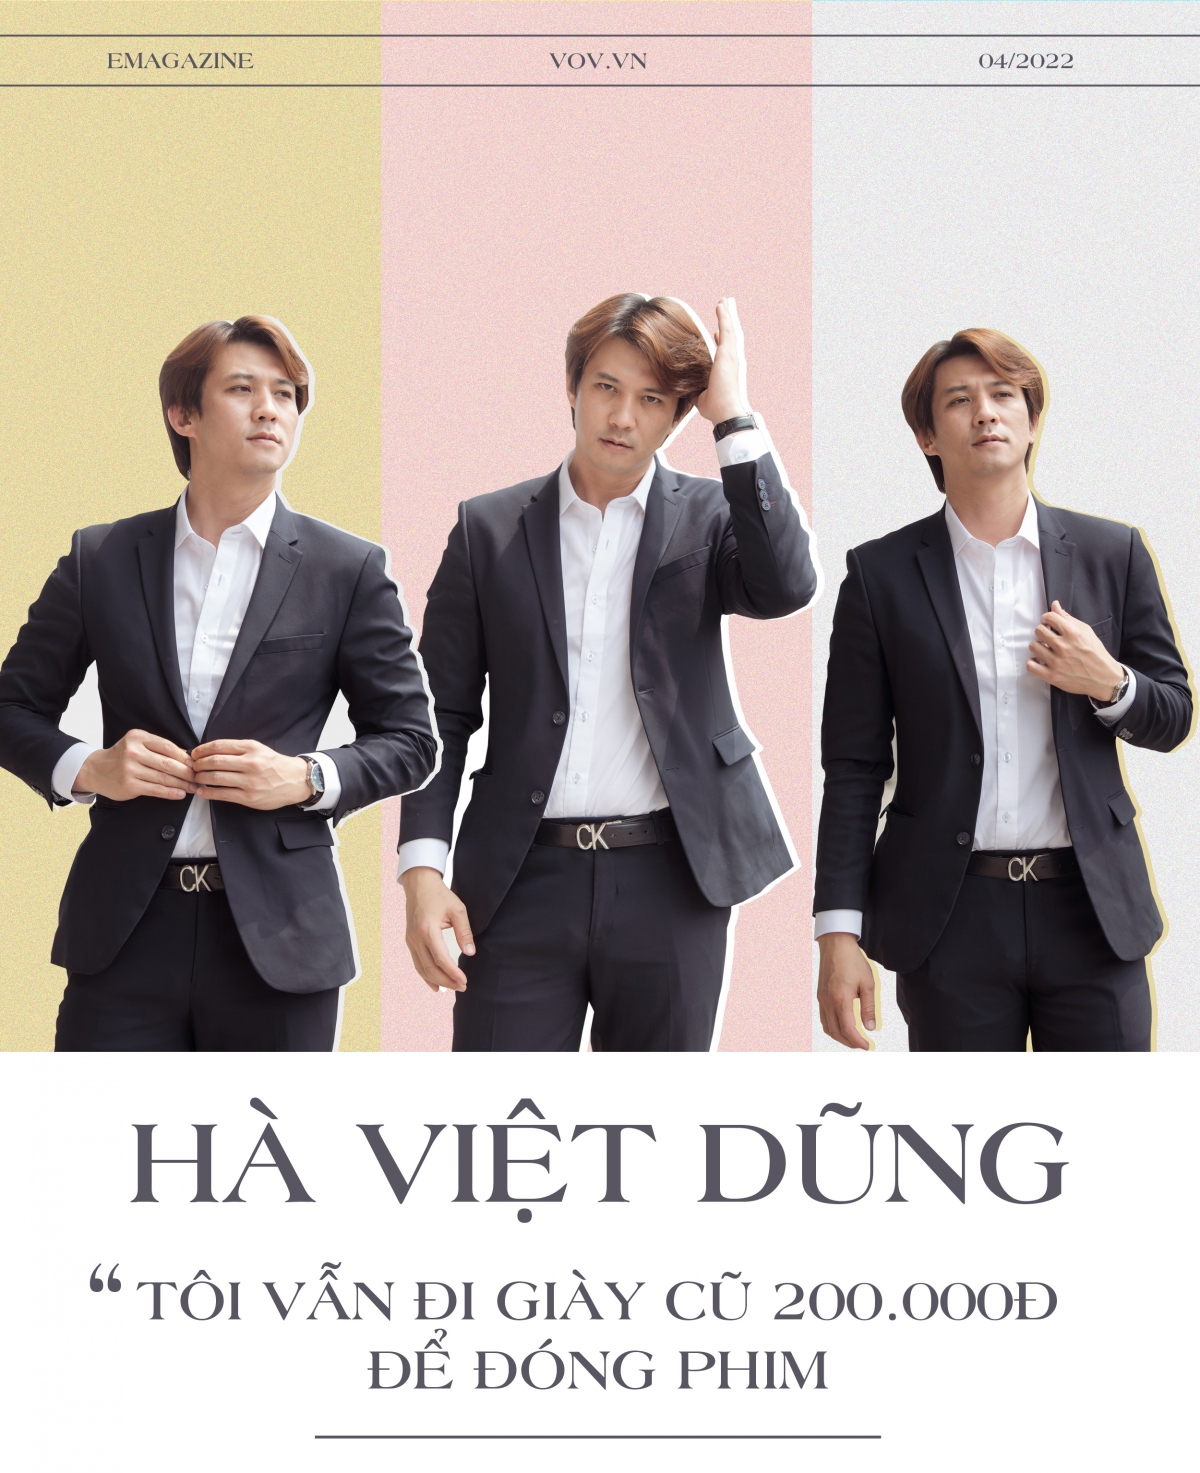 Hà Việt Dũng: “Tôi vẫn đi giày cũ 200.000đ để đóng phim”